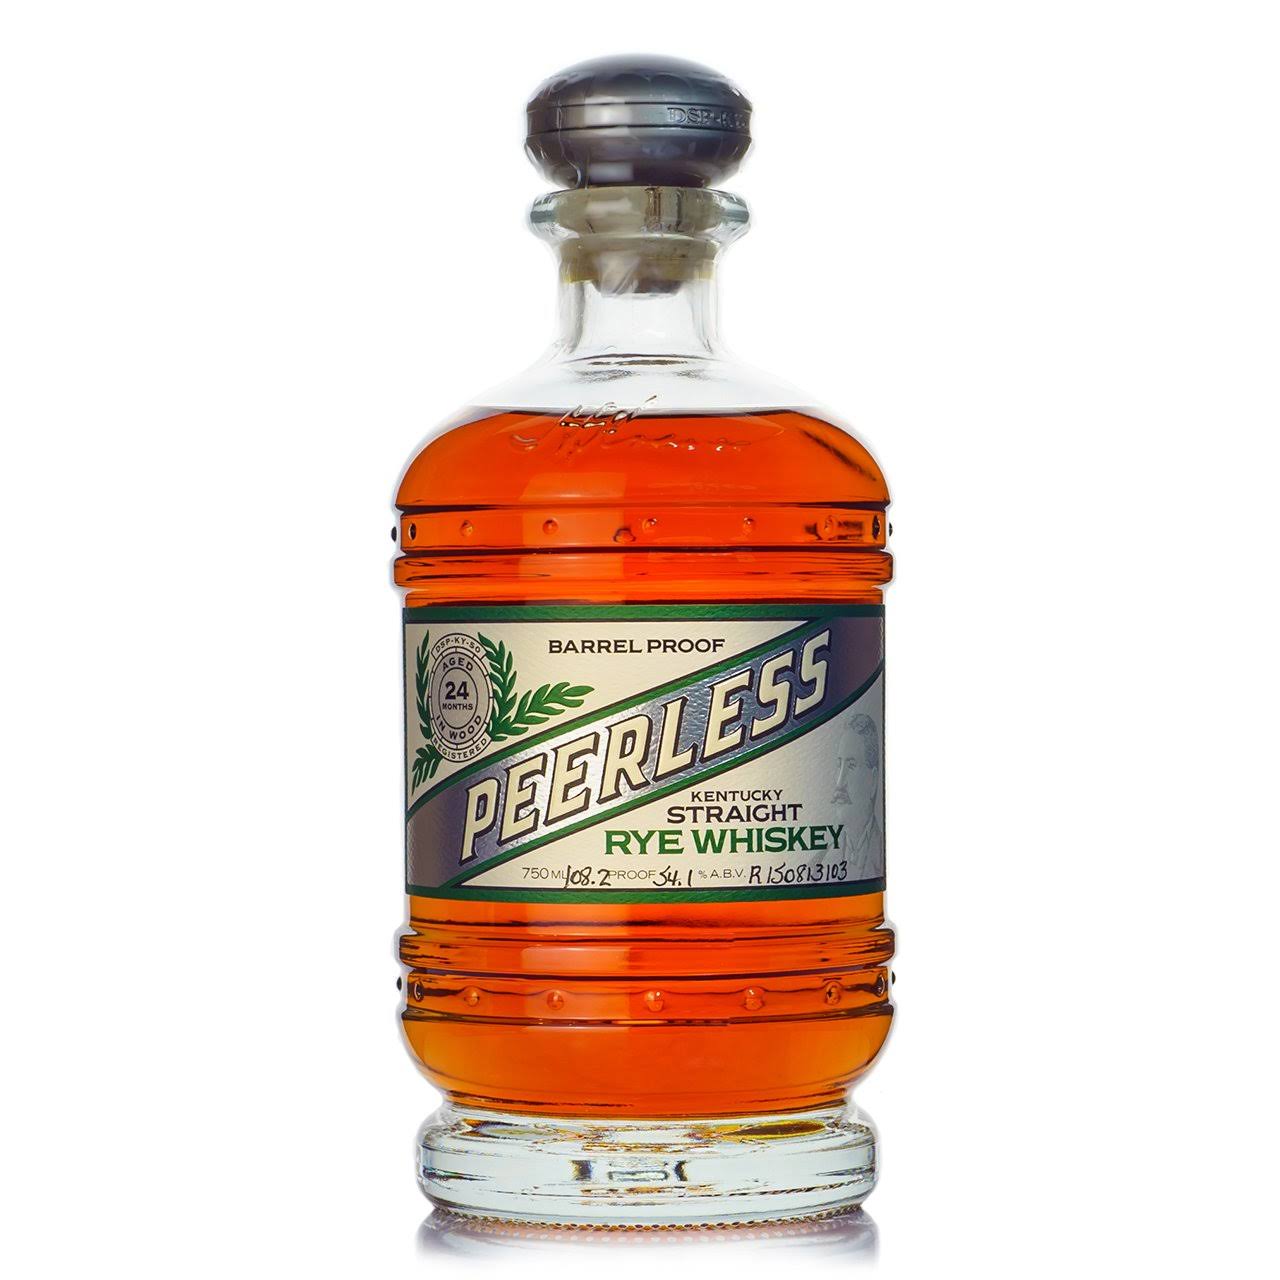 Peerless Kentucky Straight Rye Whiskey 750ml